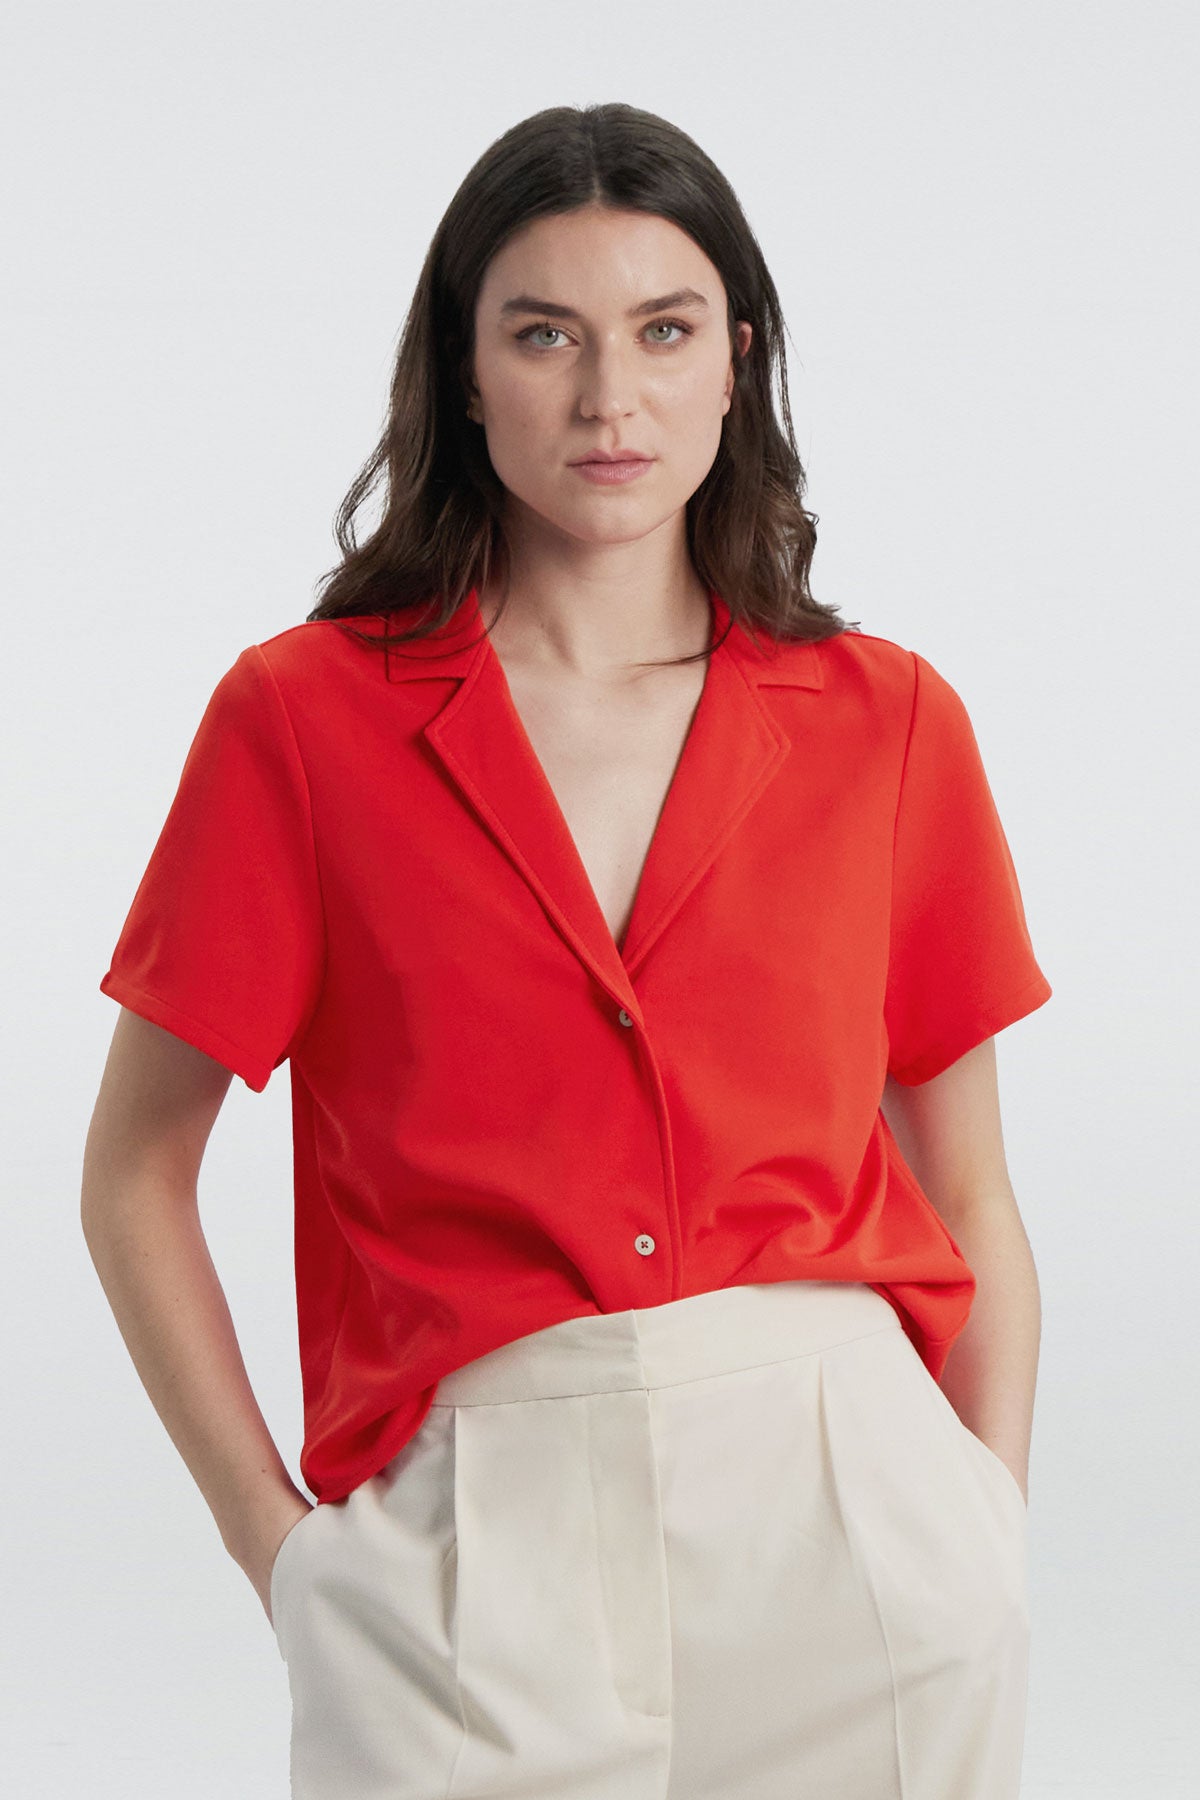 Camisa manga corta rojo cardio de Sepiia, fresca y elegante, perfecta para el verano. Foto frente